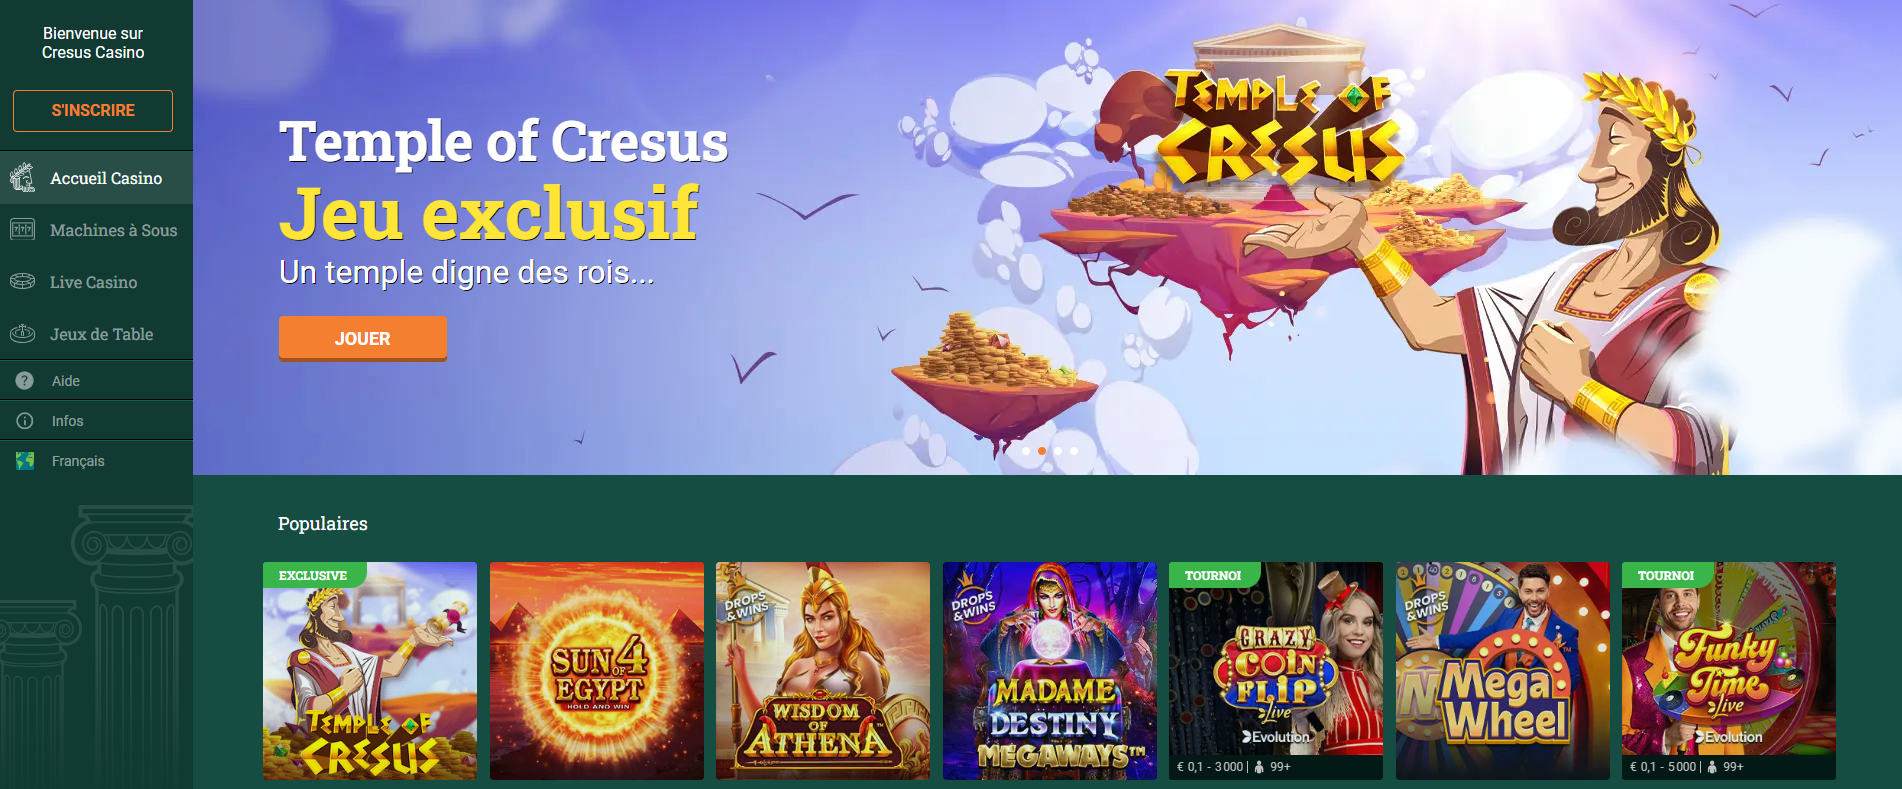 Bonus Casino Cresus